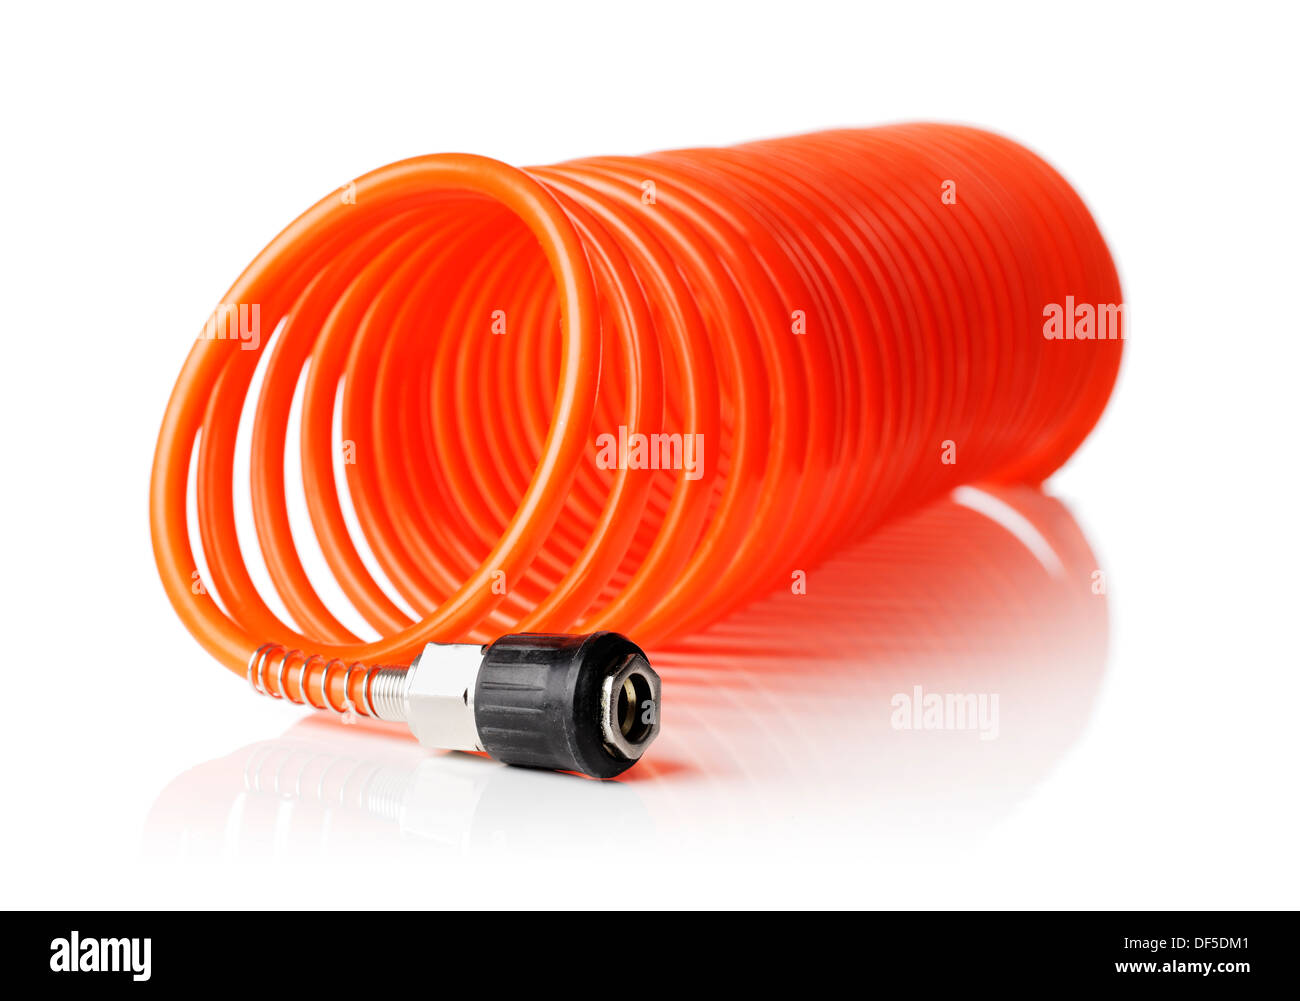 Orange-Rot dünne Luft Spiralschlauch für pneumatische Werkzeuge verwendet  Stockfotografie - Alamy